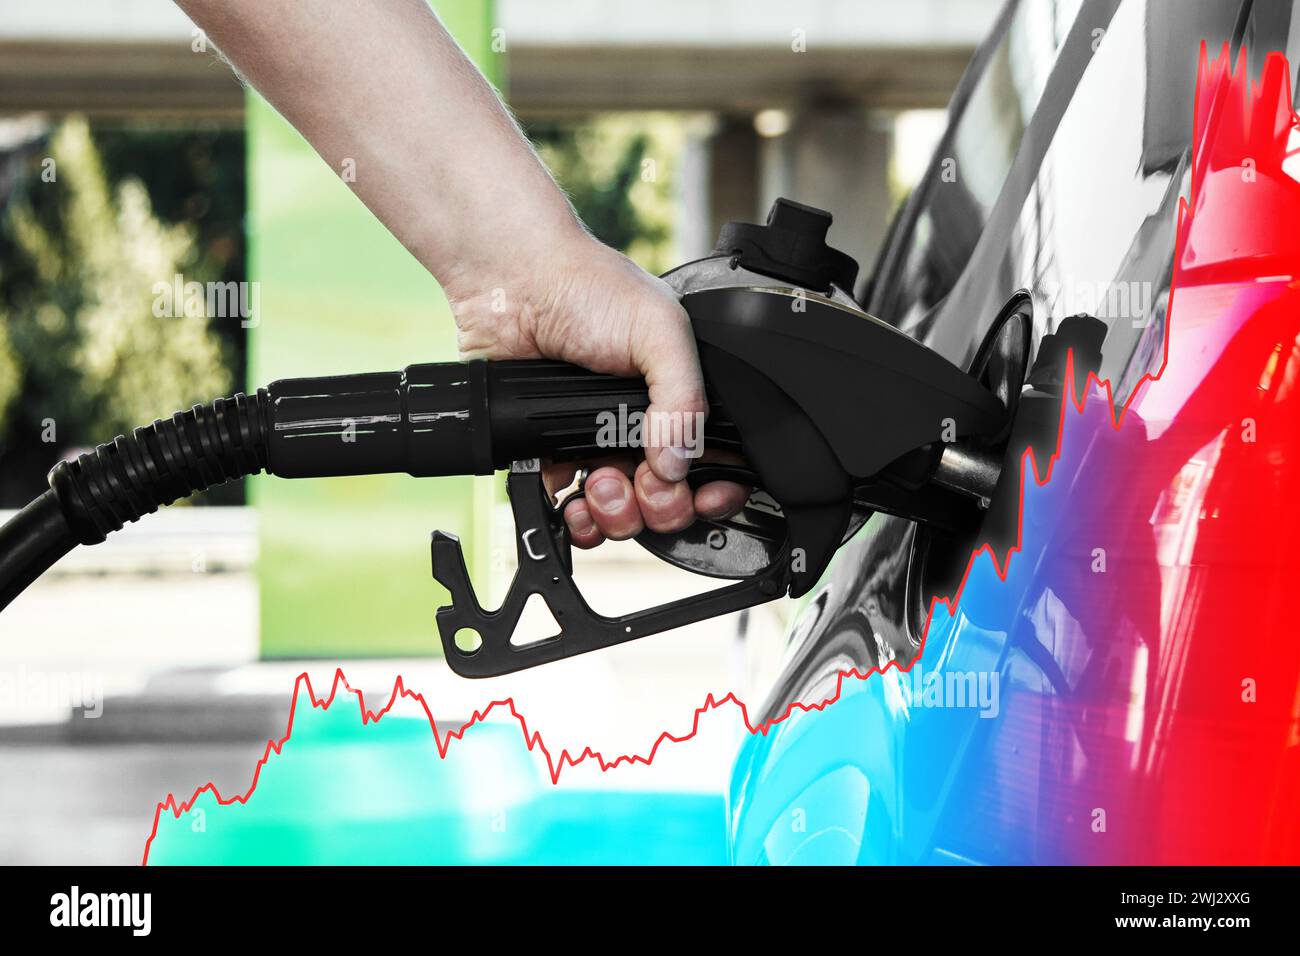 Main avec la buse de carburant et le graphique croissant montrant l'augmentation du prix de l'essence pendant la crise énergétique Banque D'Images